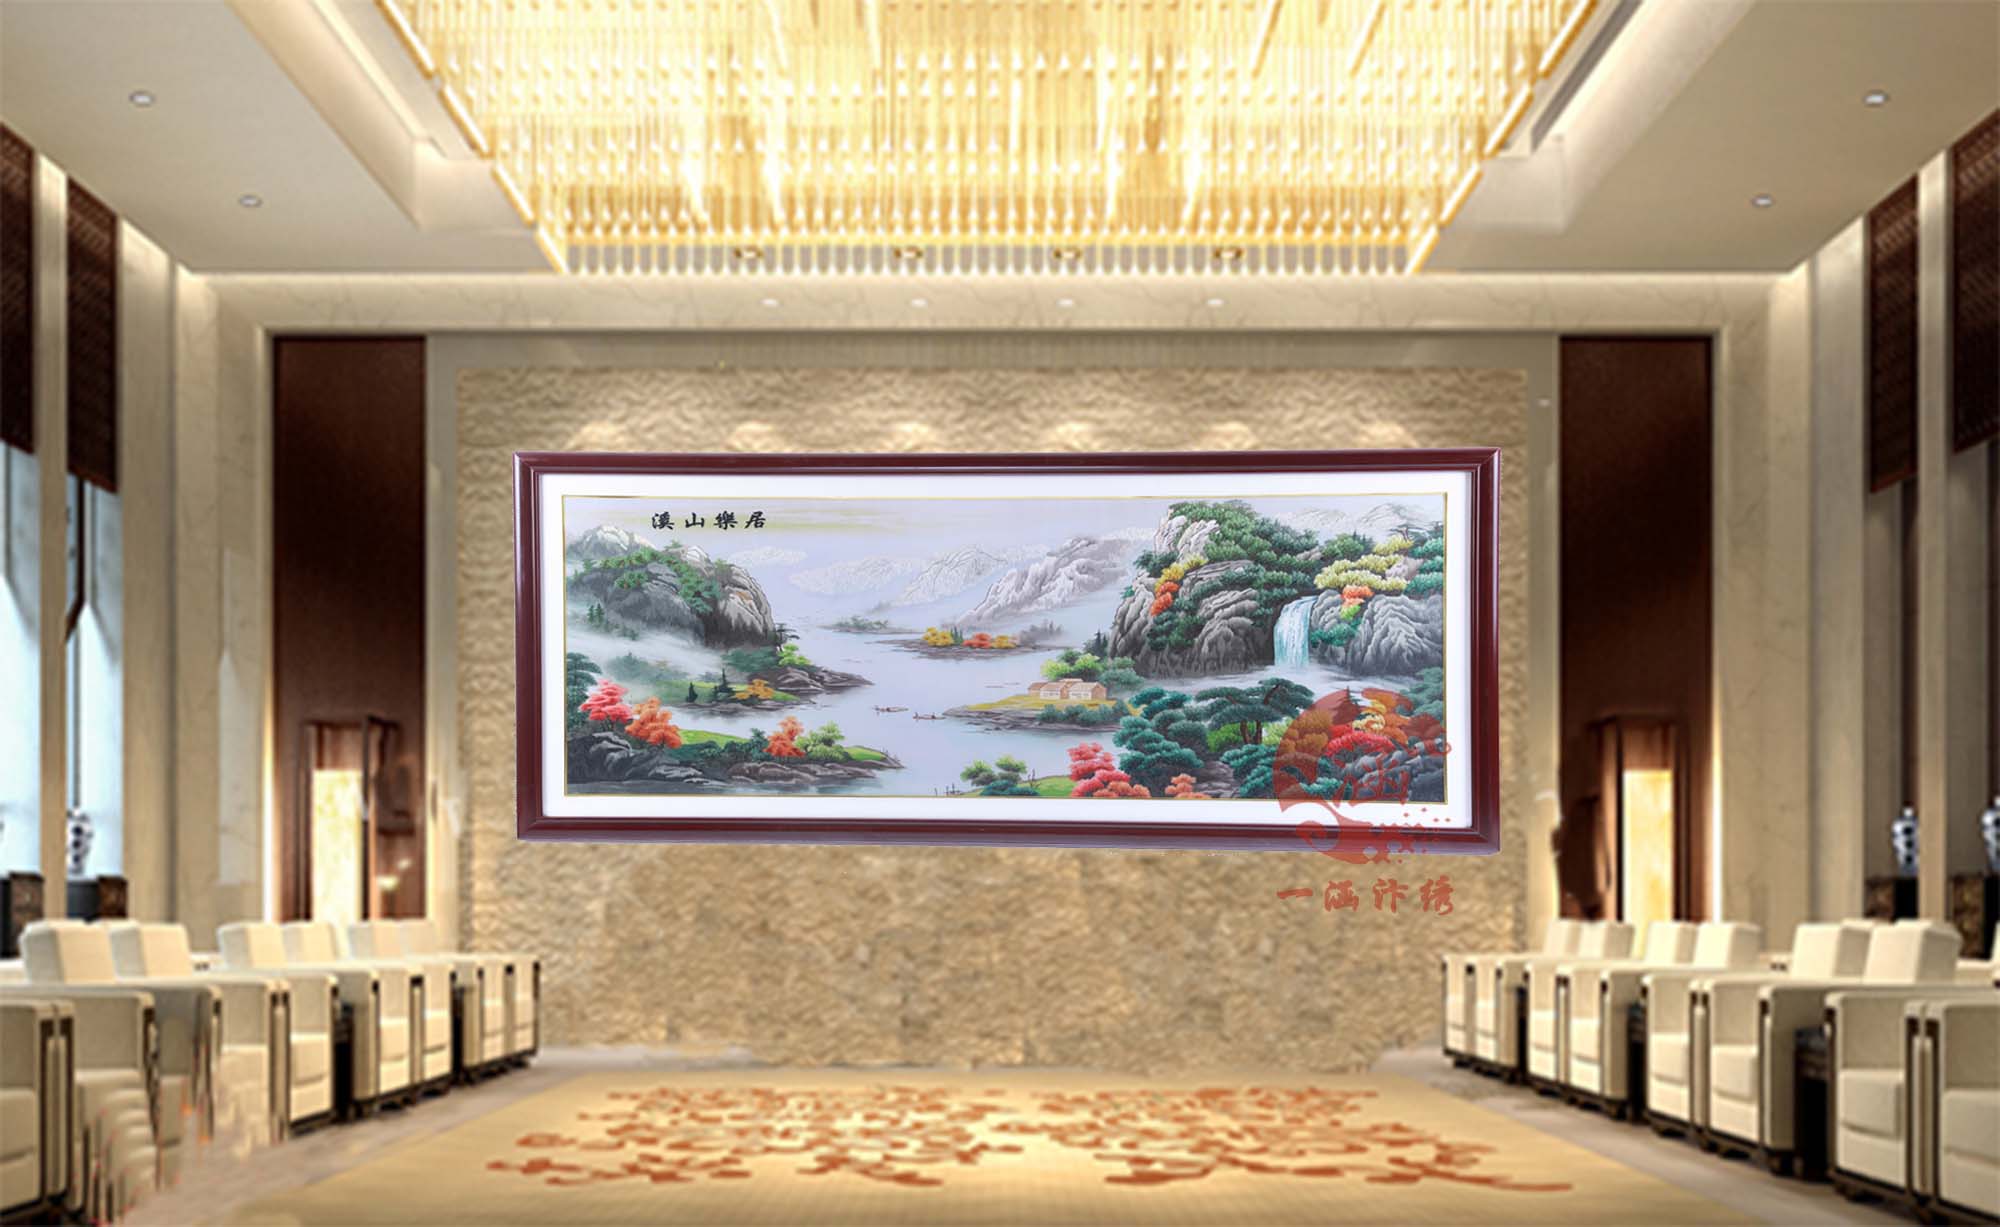 刺绣溪山乐居图装饰大型会议室大厅